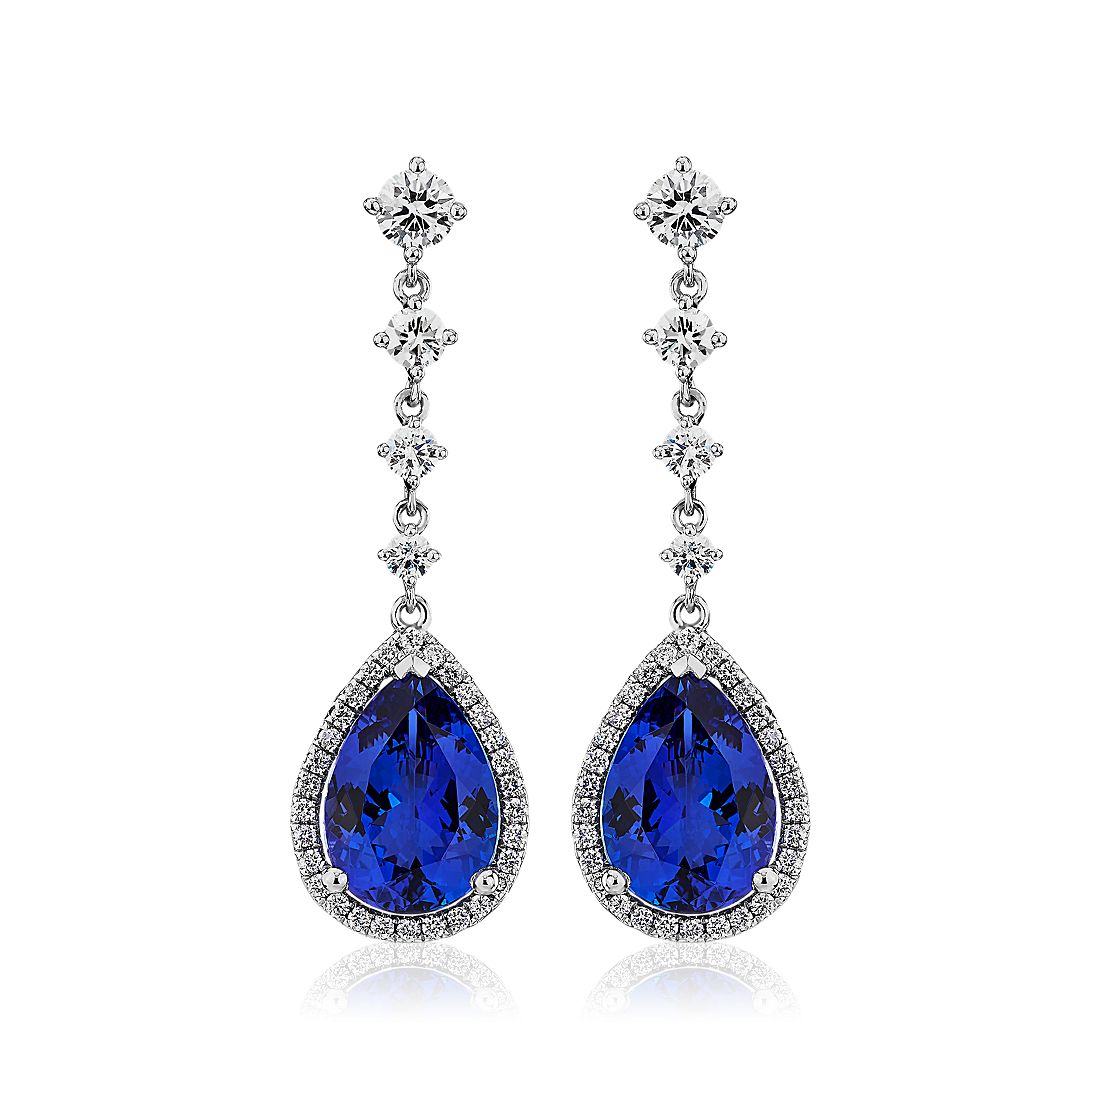 Pear-shaped tanzanite earrings